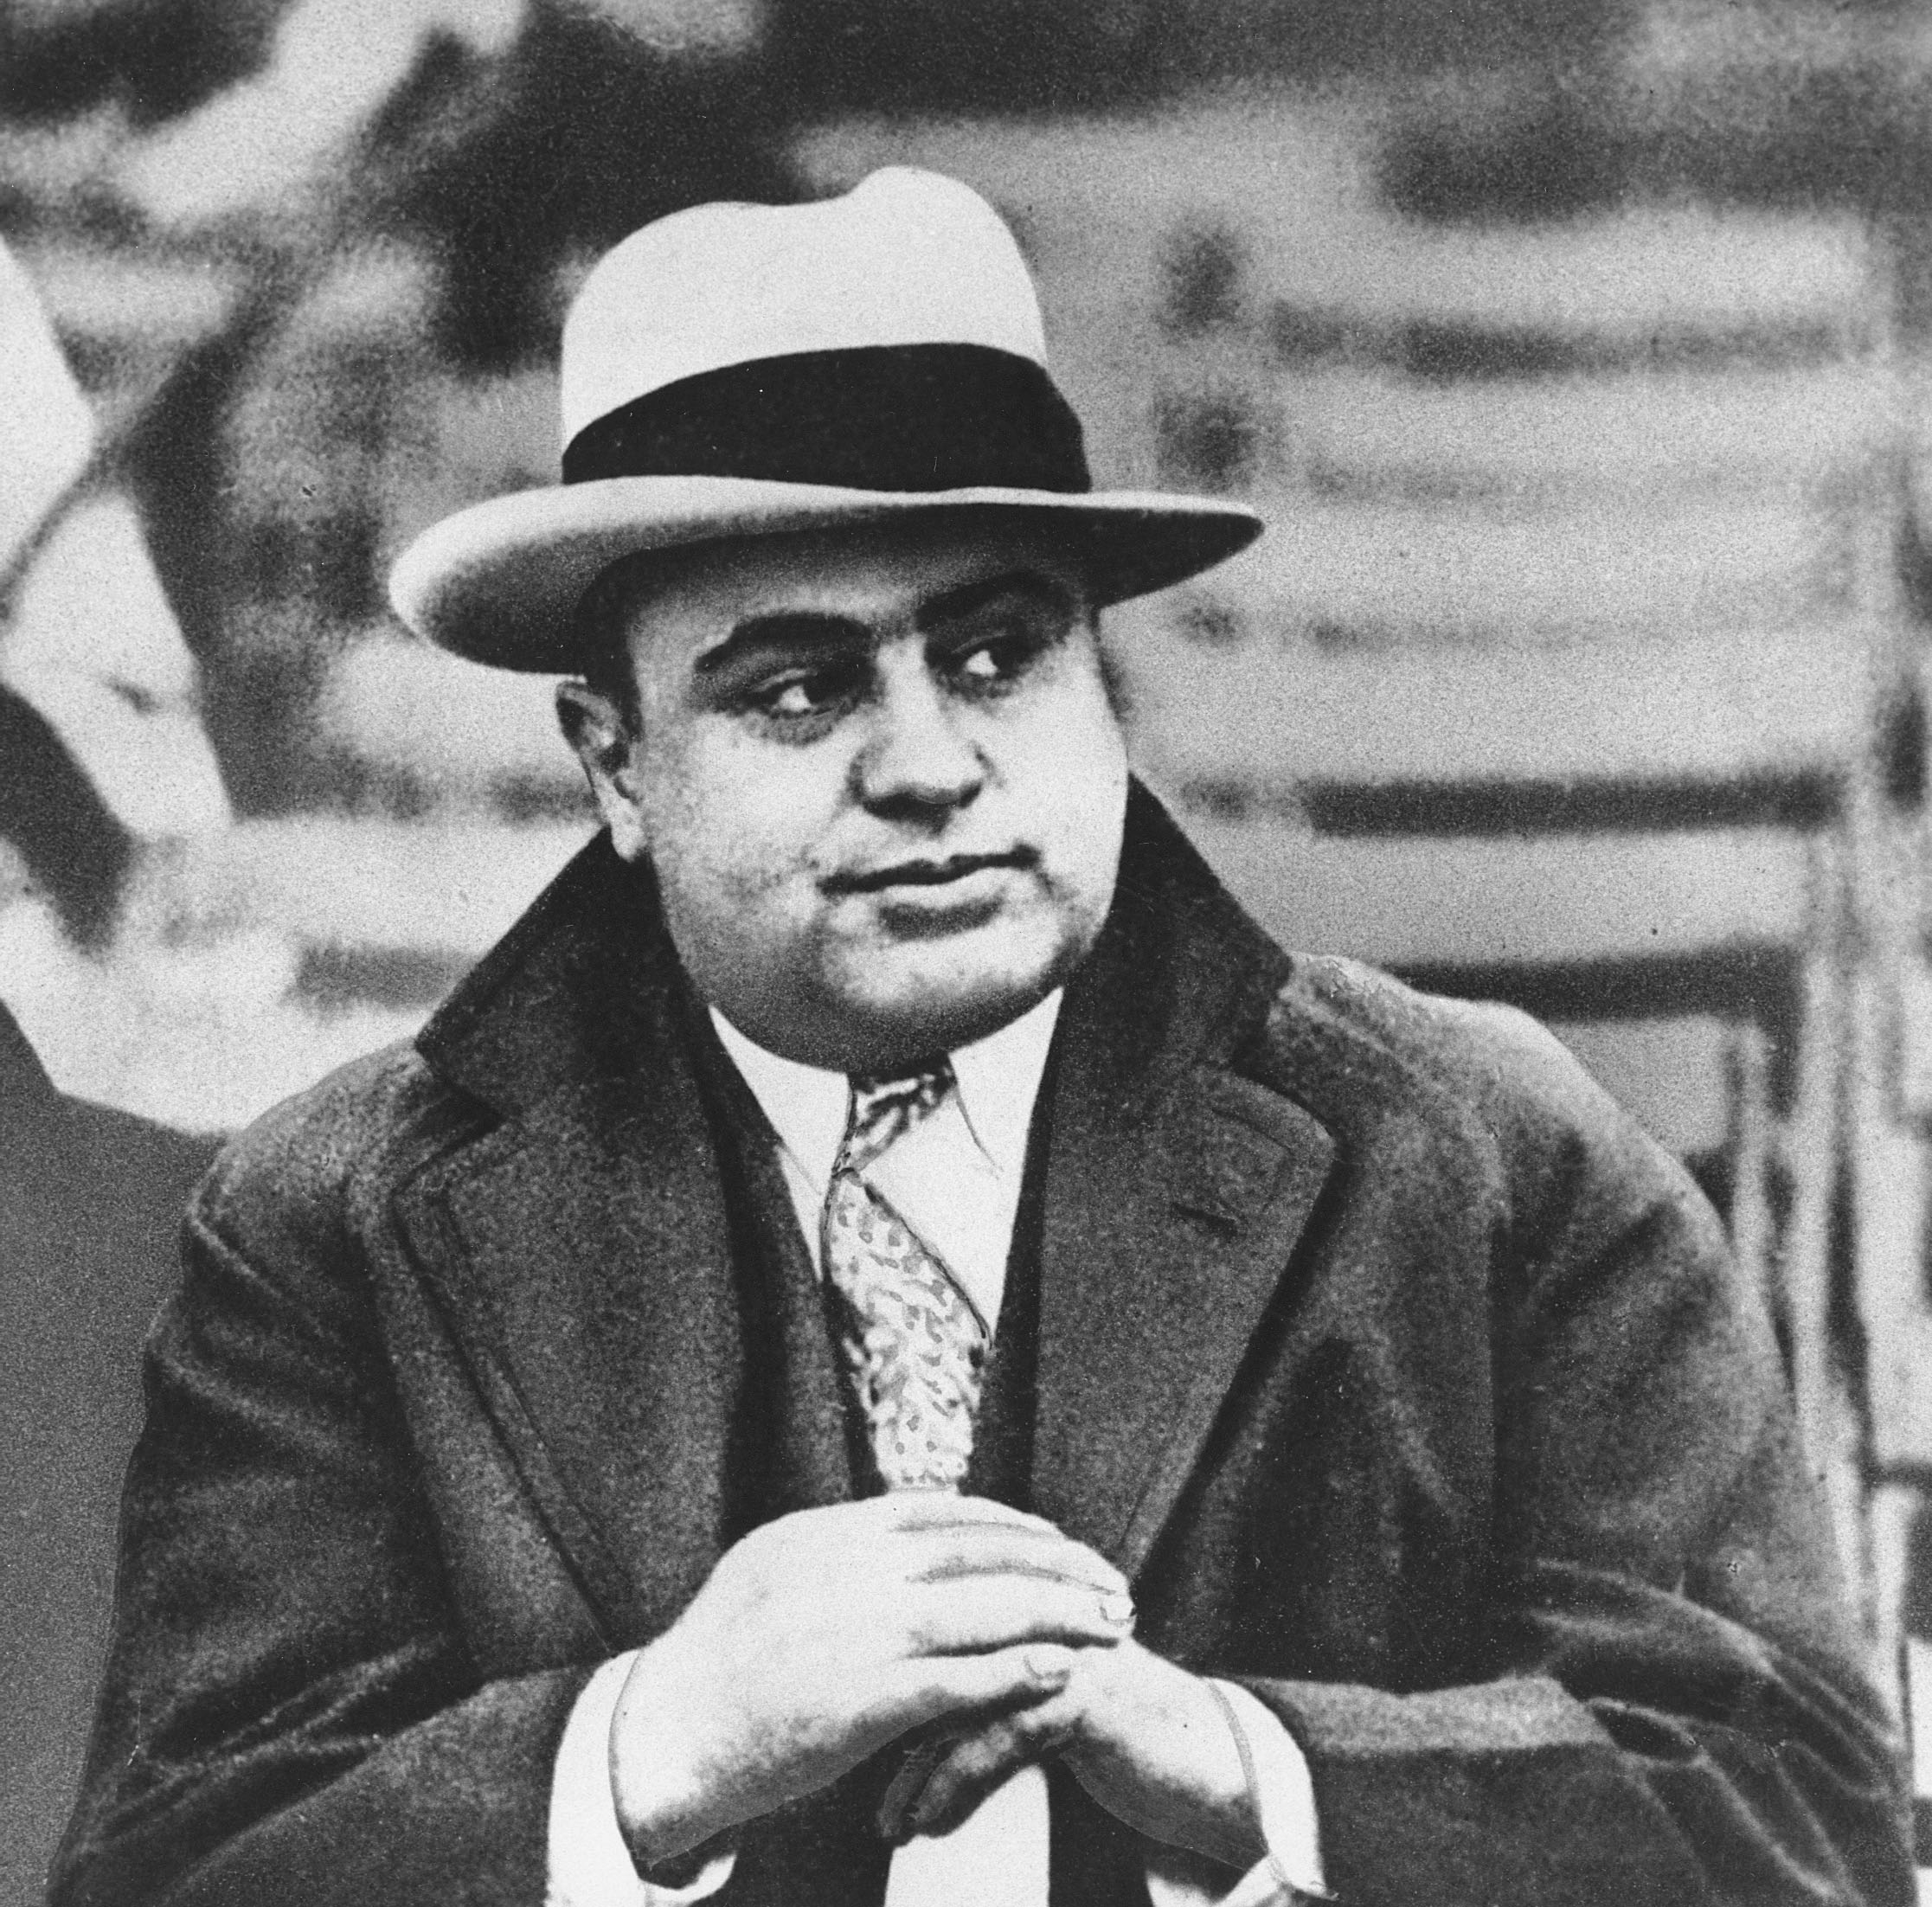 Alcatraz var väl känt för sin rymningssäkerhet och hade hedersgäster som gangsterprinsen Al Capone.